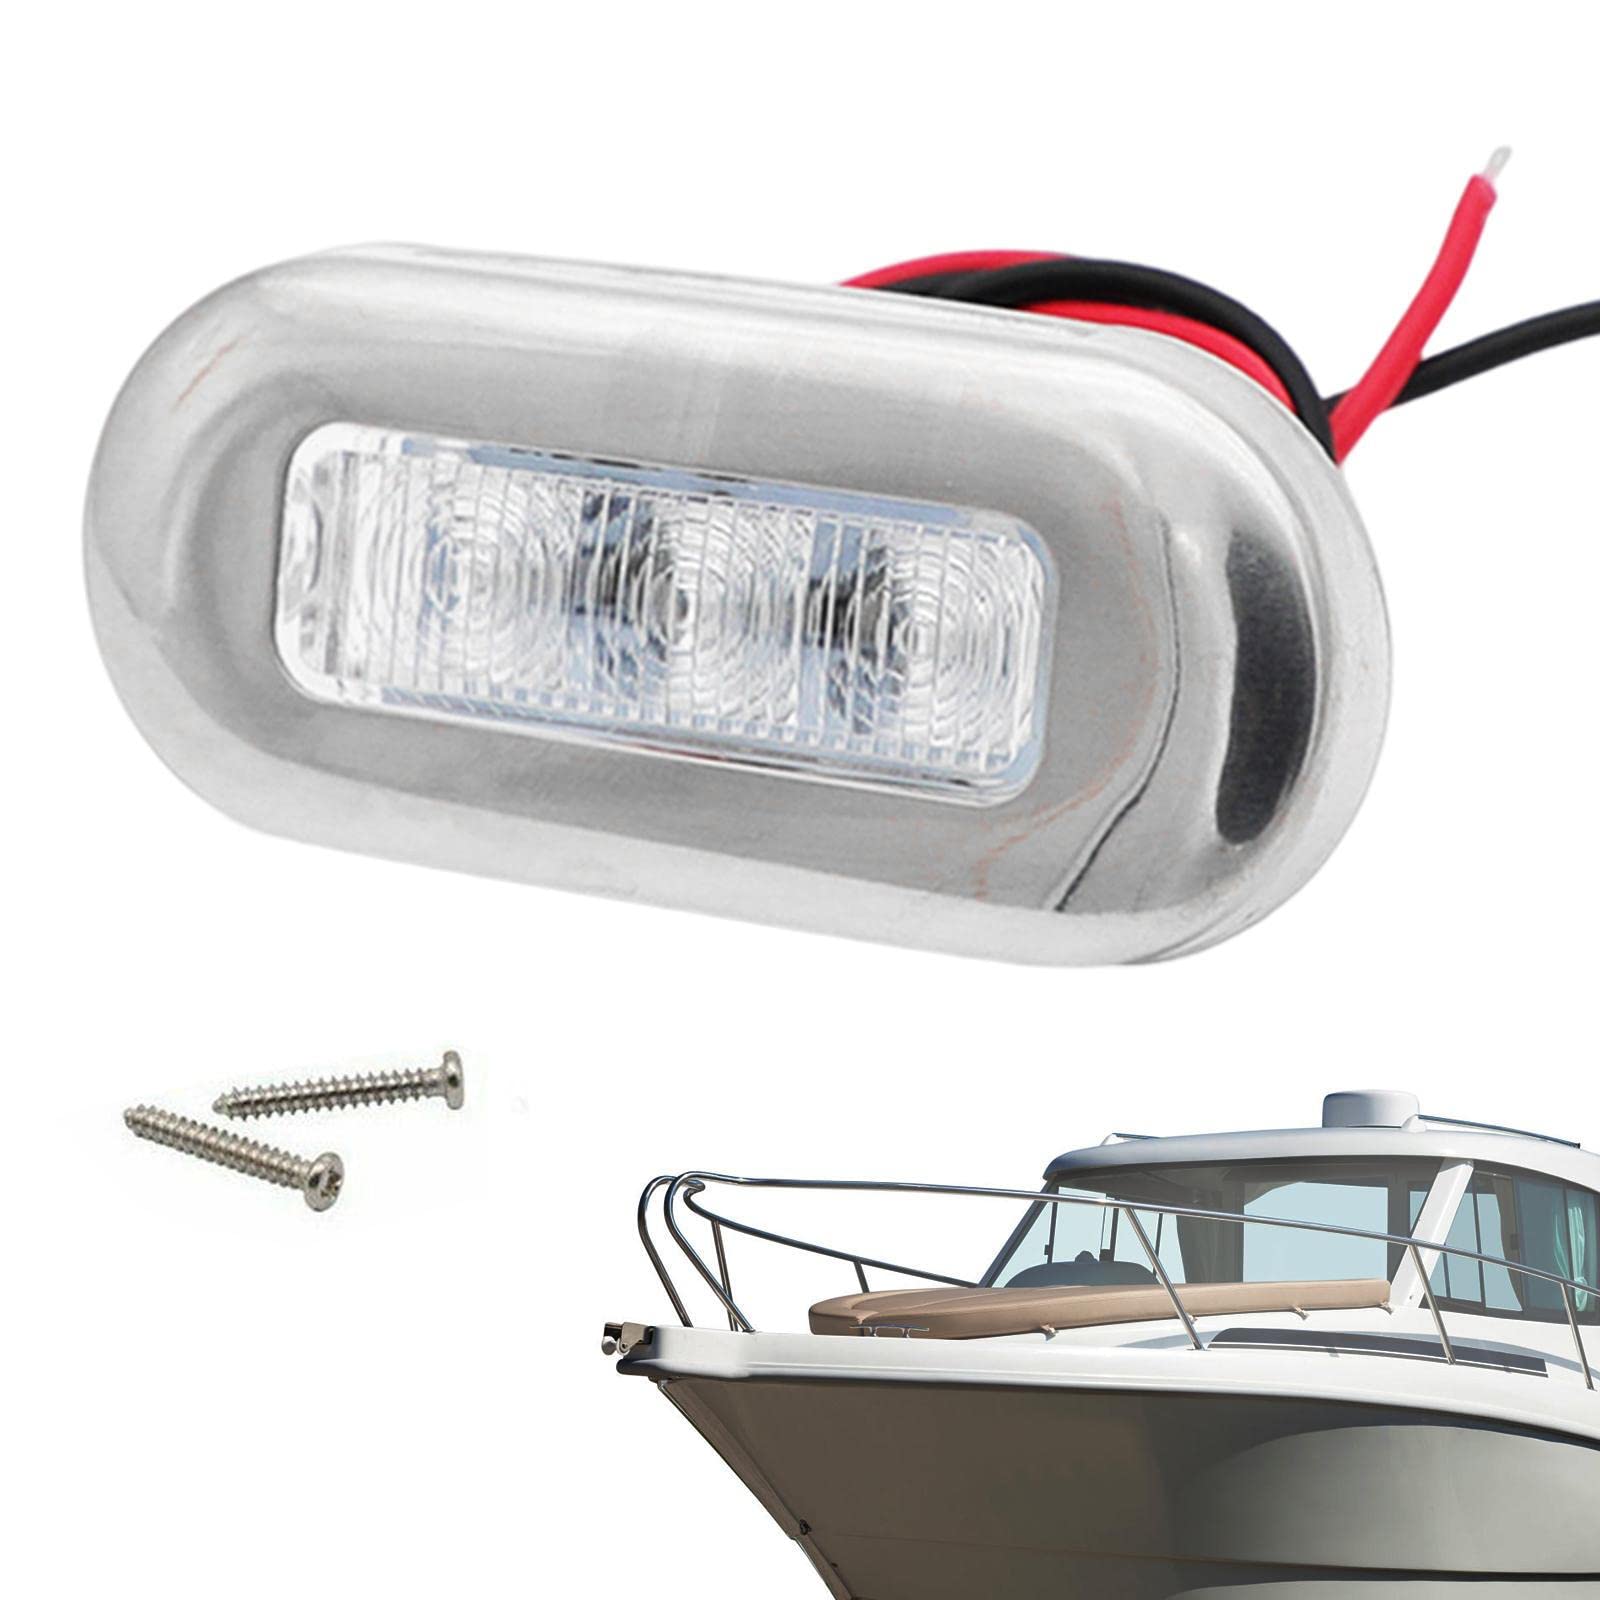 LYNSAY Boots-Deck- – 12 V wasserdichte Deck-LED – 3 LED-Edelstahl-Rahmen, für Auto, Schiff, hell, wasserdicht, Halterung für Kreuzfahrtschiffe, Yachten von LYNSAY